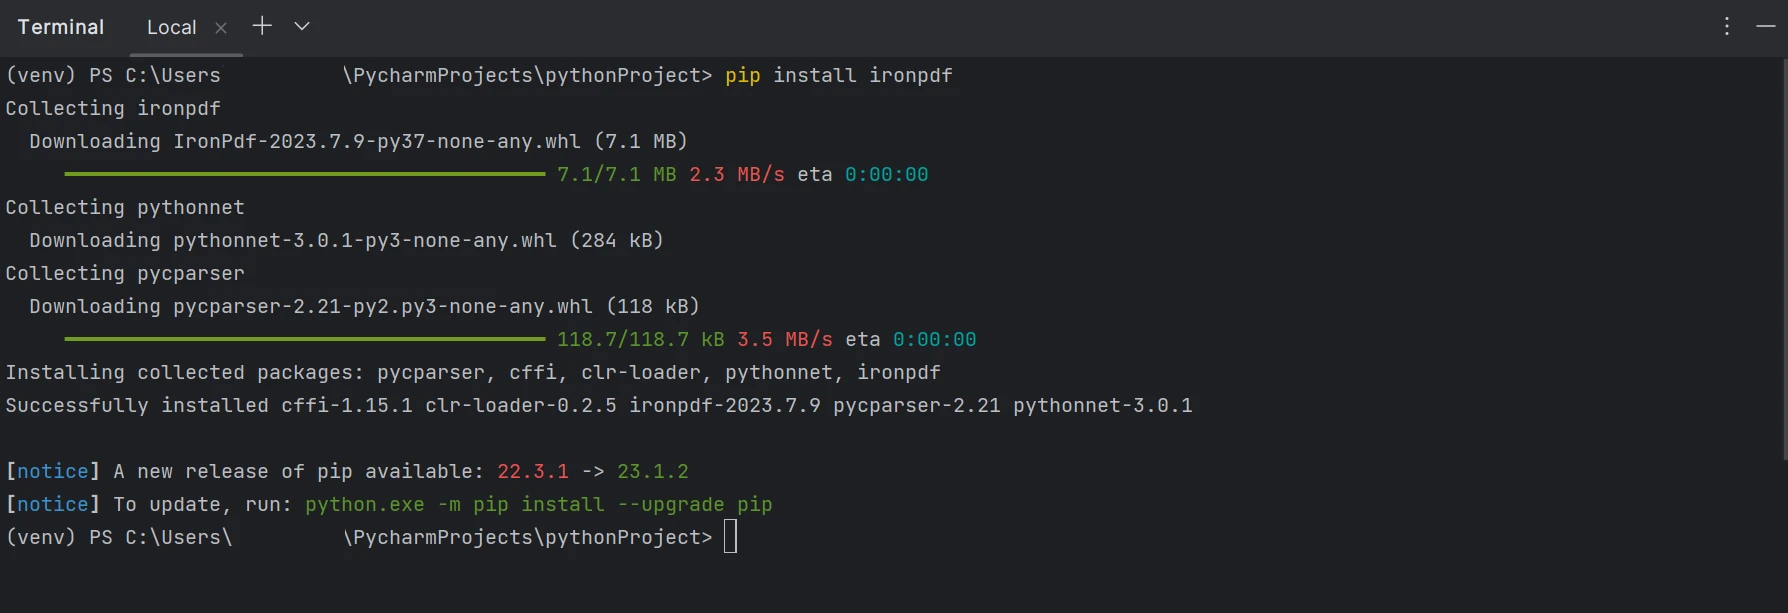 Cómo analizar un archivo PDF en Python: Figura 4 - Un terminal mostrando la instalación de IronPDF usando pip.